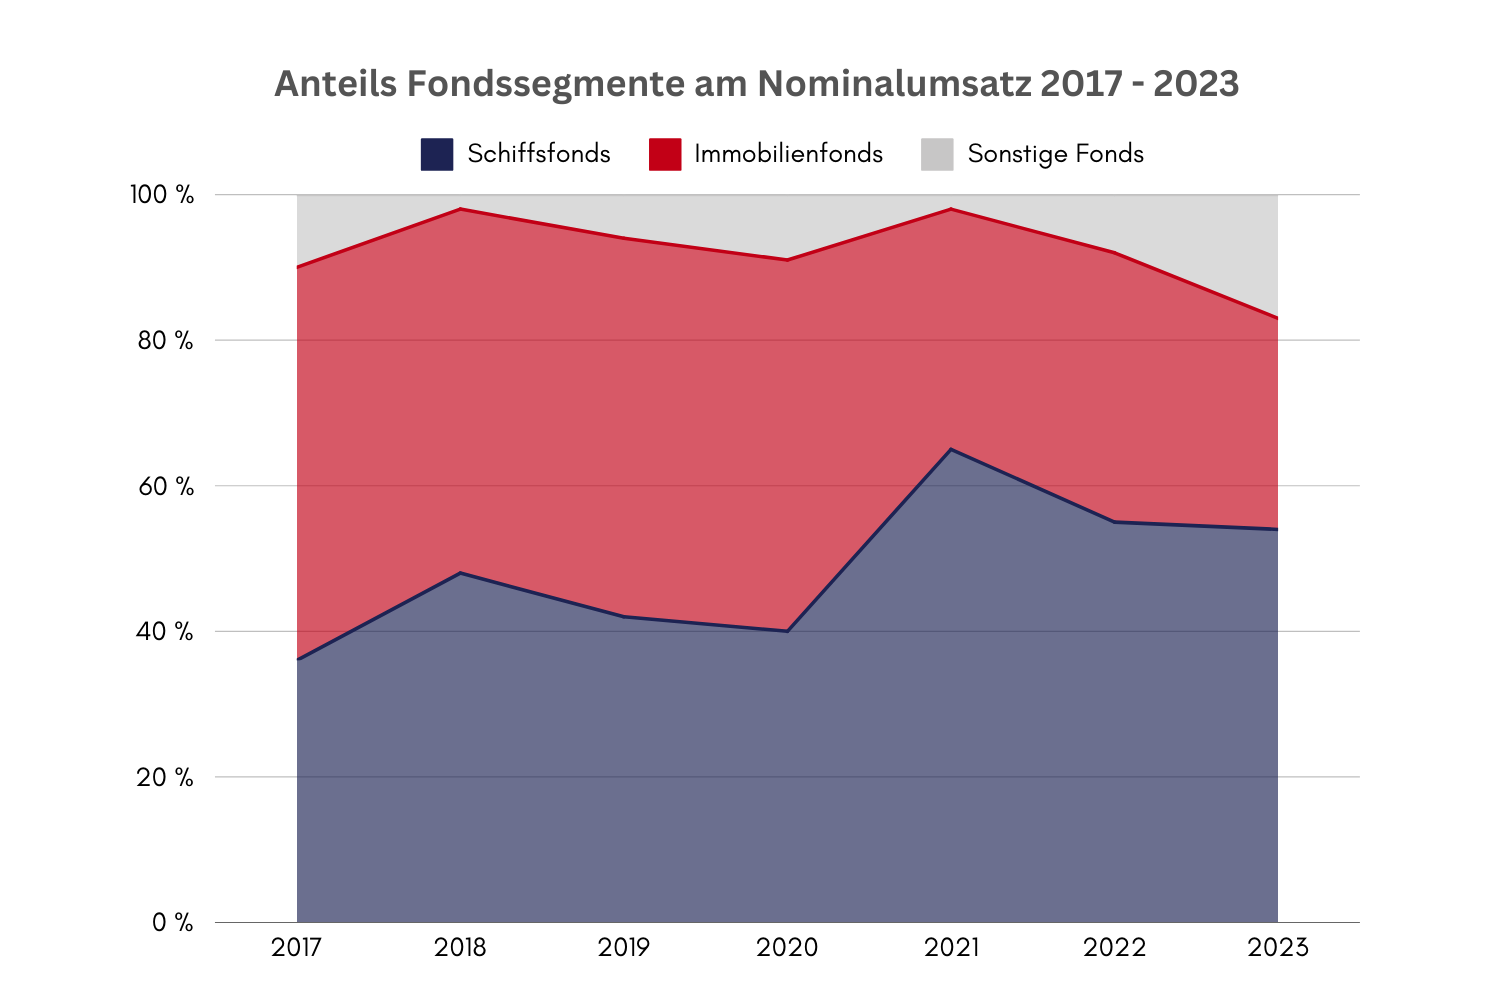 Anteil Fondssegmente am Nominalumsatz 2017-2023_Fondshandel_Direkt